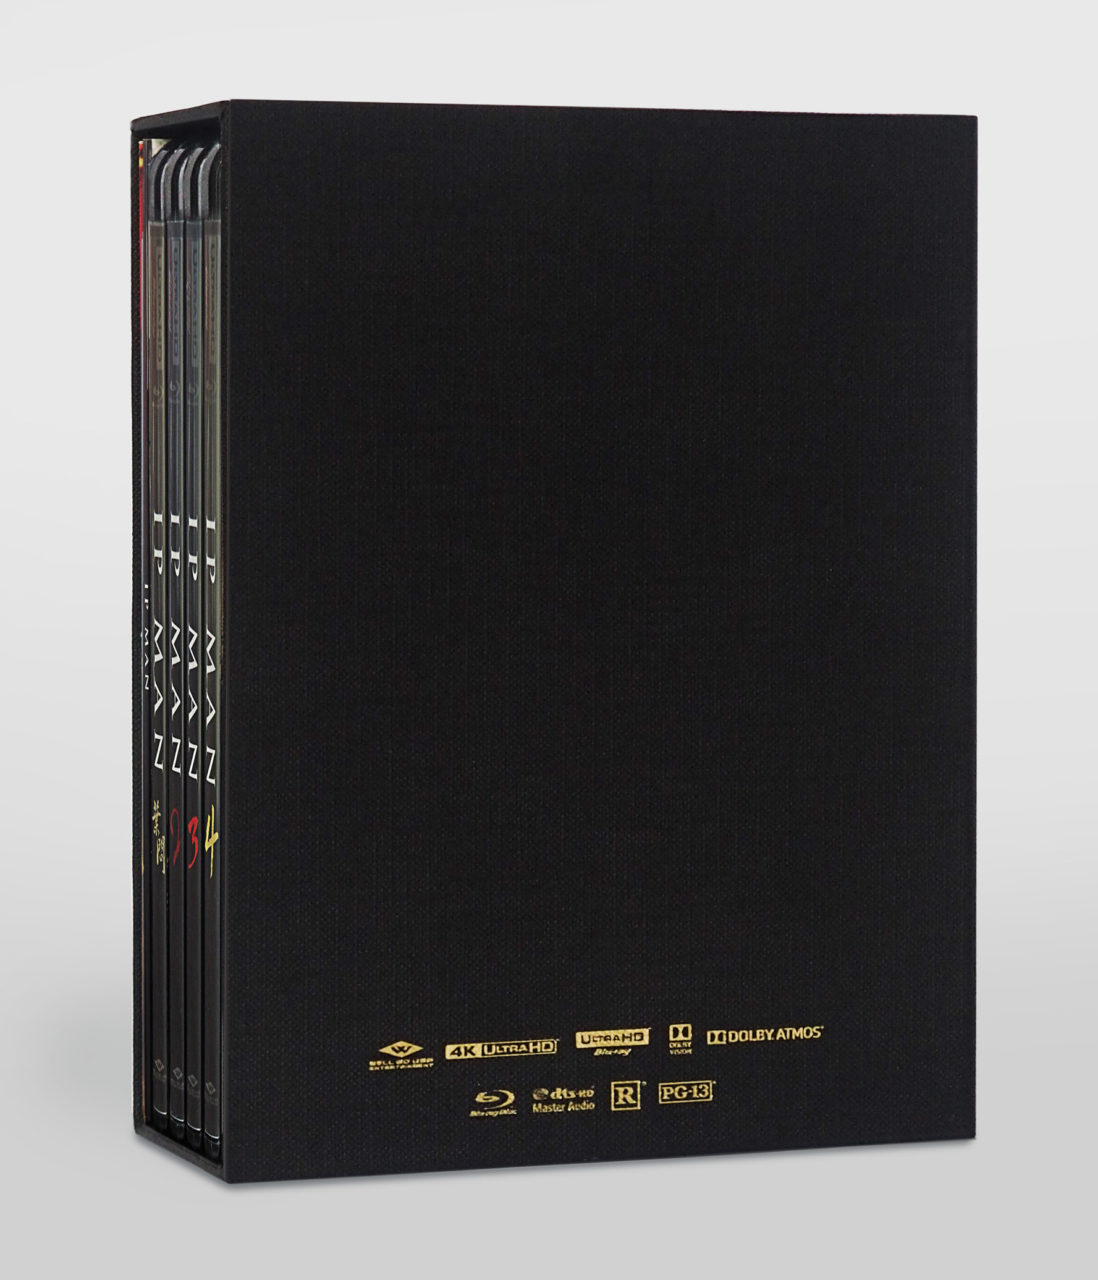 IP Man Complete Collection 4K UHD Box Set (WellGo USA)